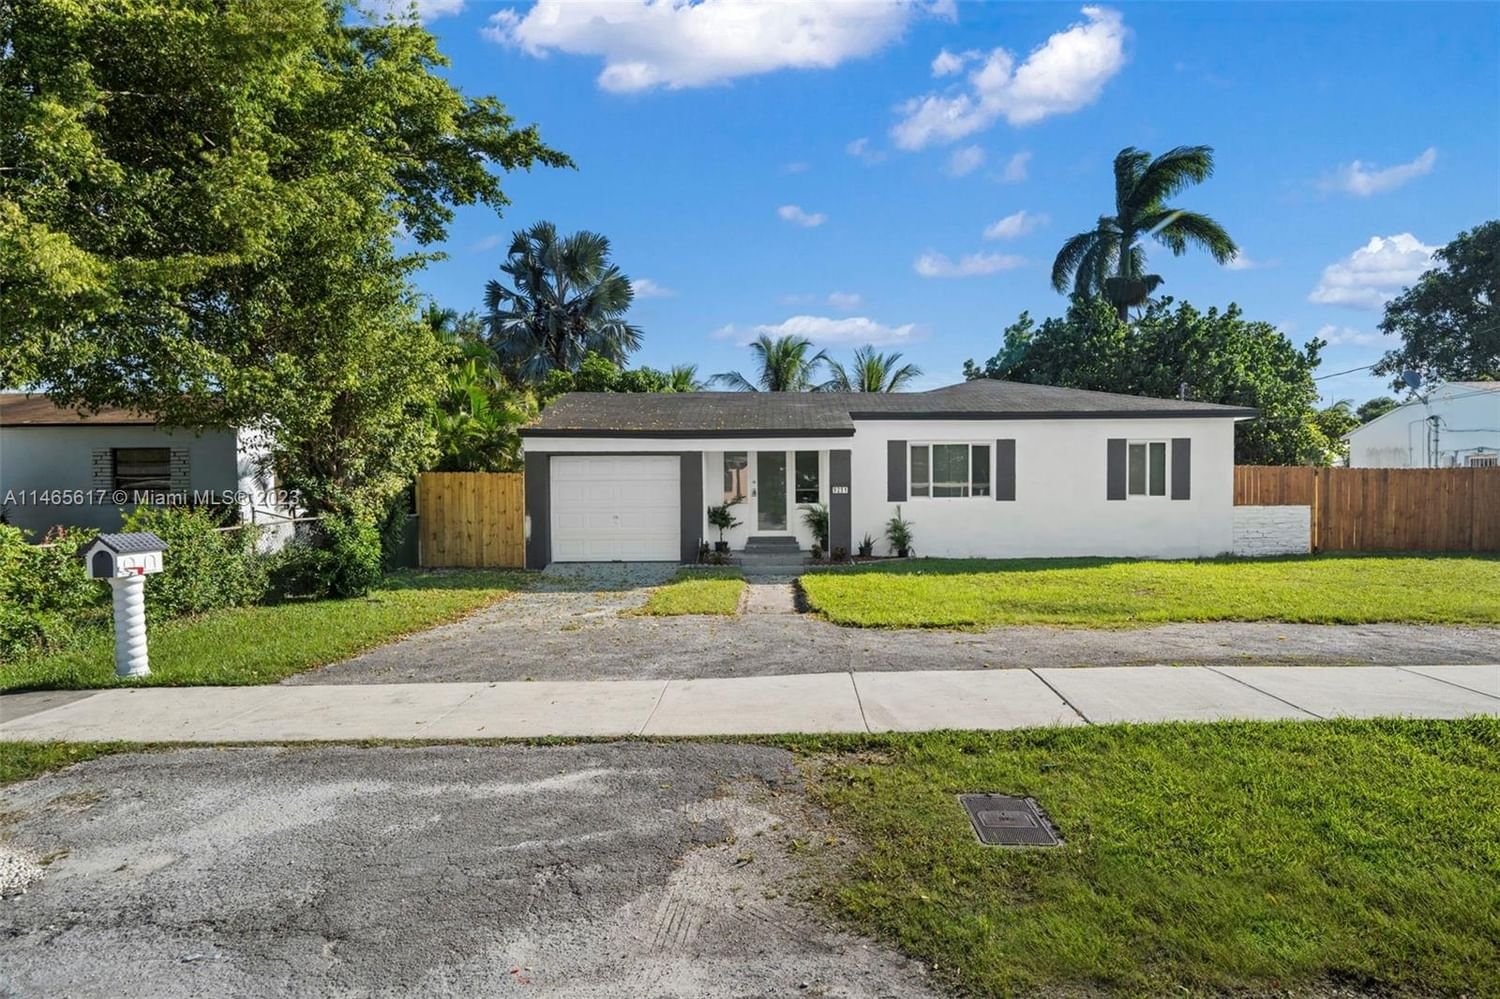 Real estate property located at 9251 Little River Blvd, Miami-Dade County, FLAMINGO VILLAGE, Miami, FL